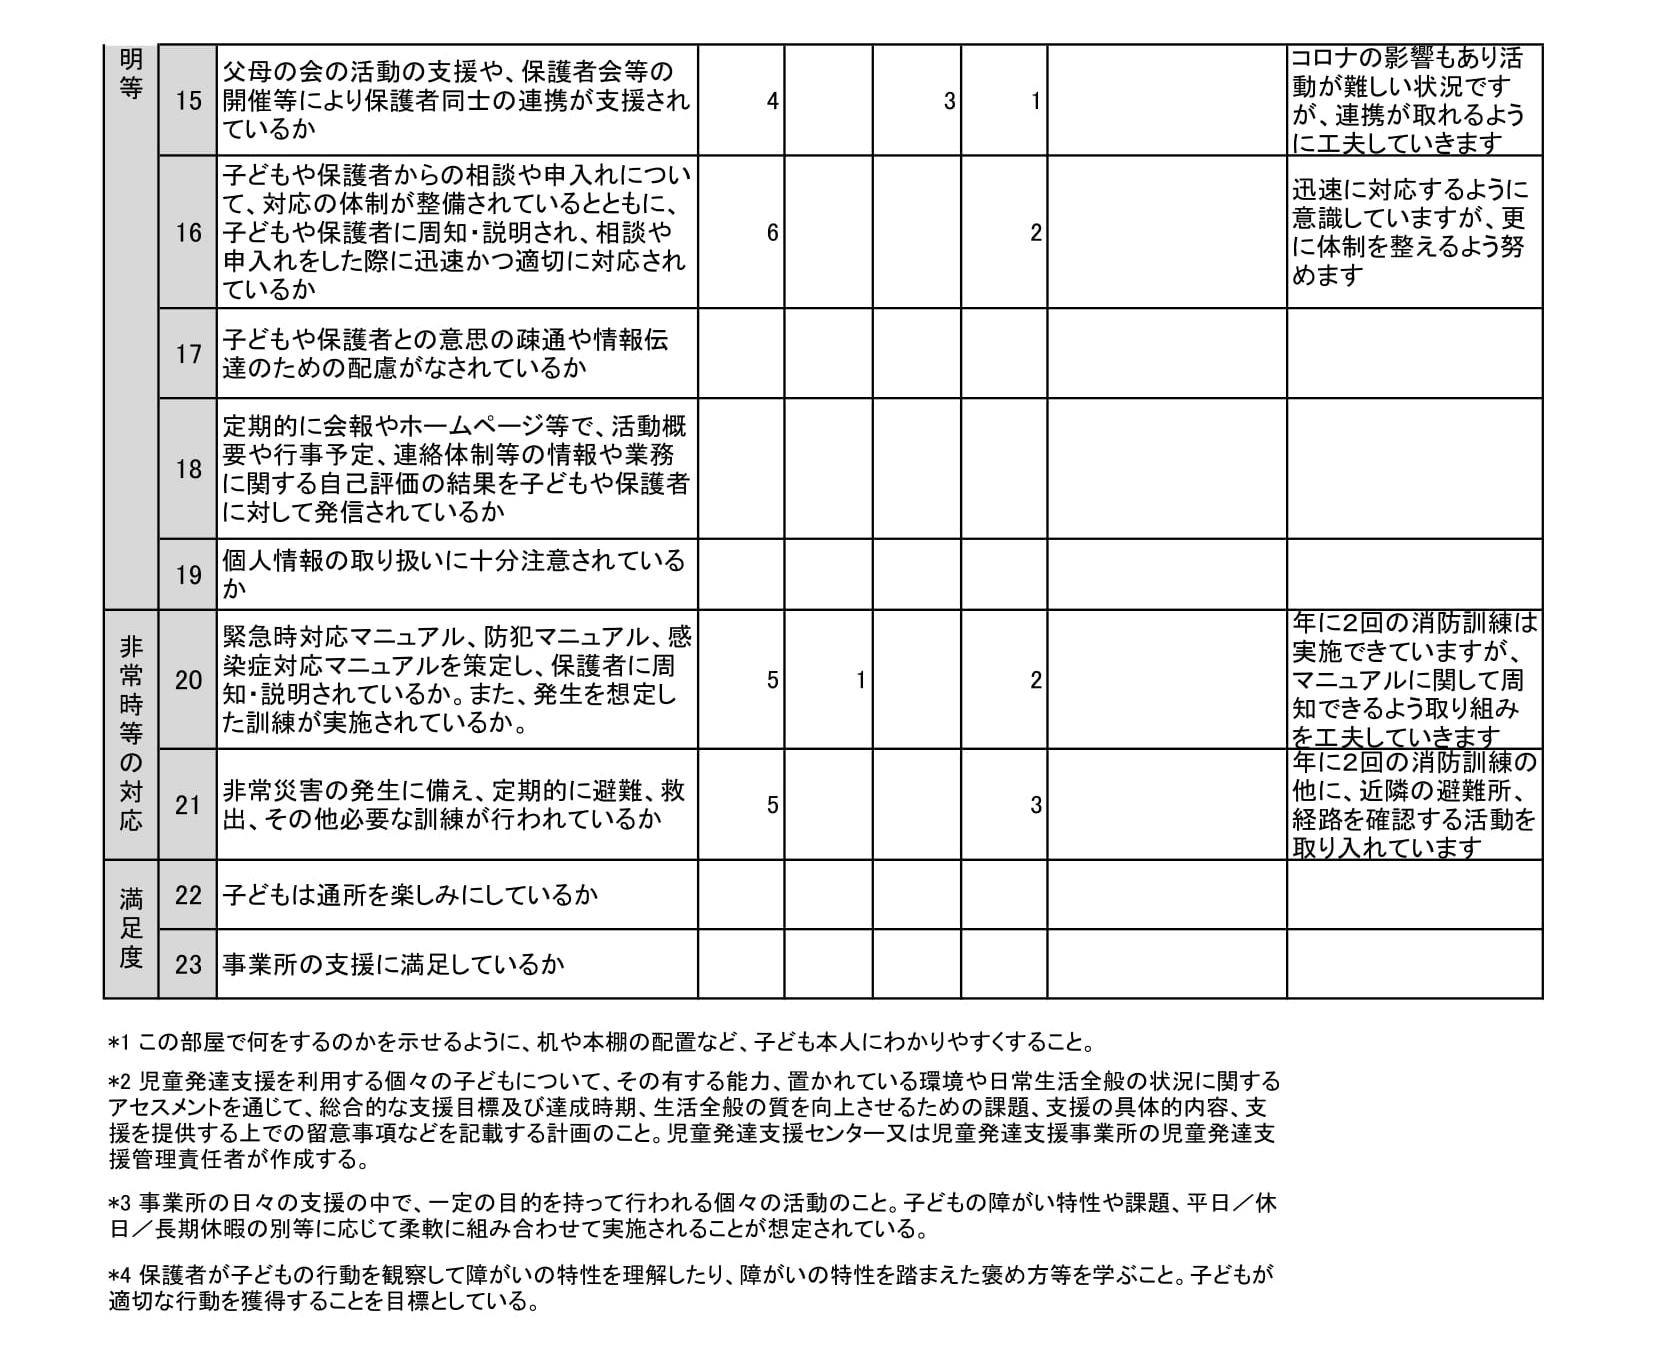 【児童発達支援】保護者等からの事業所評価の集計結果(sorauta)